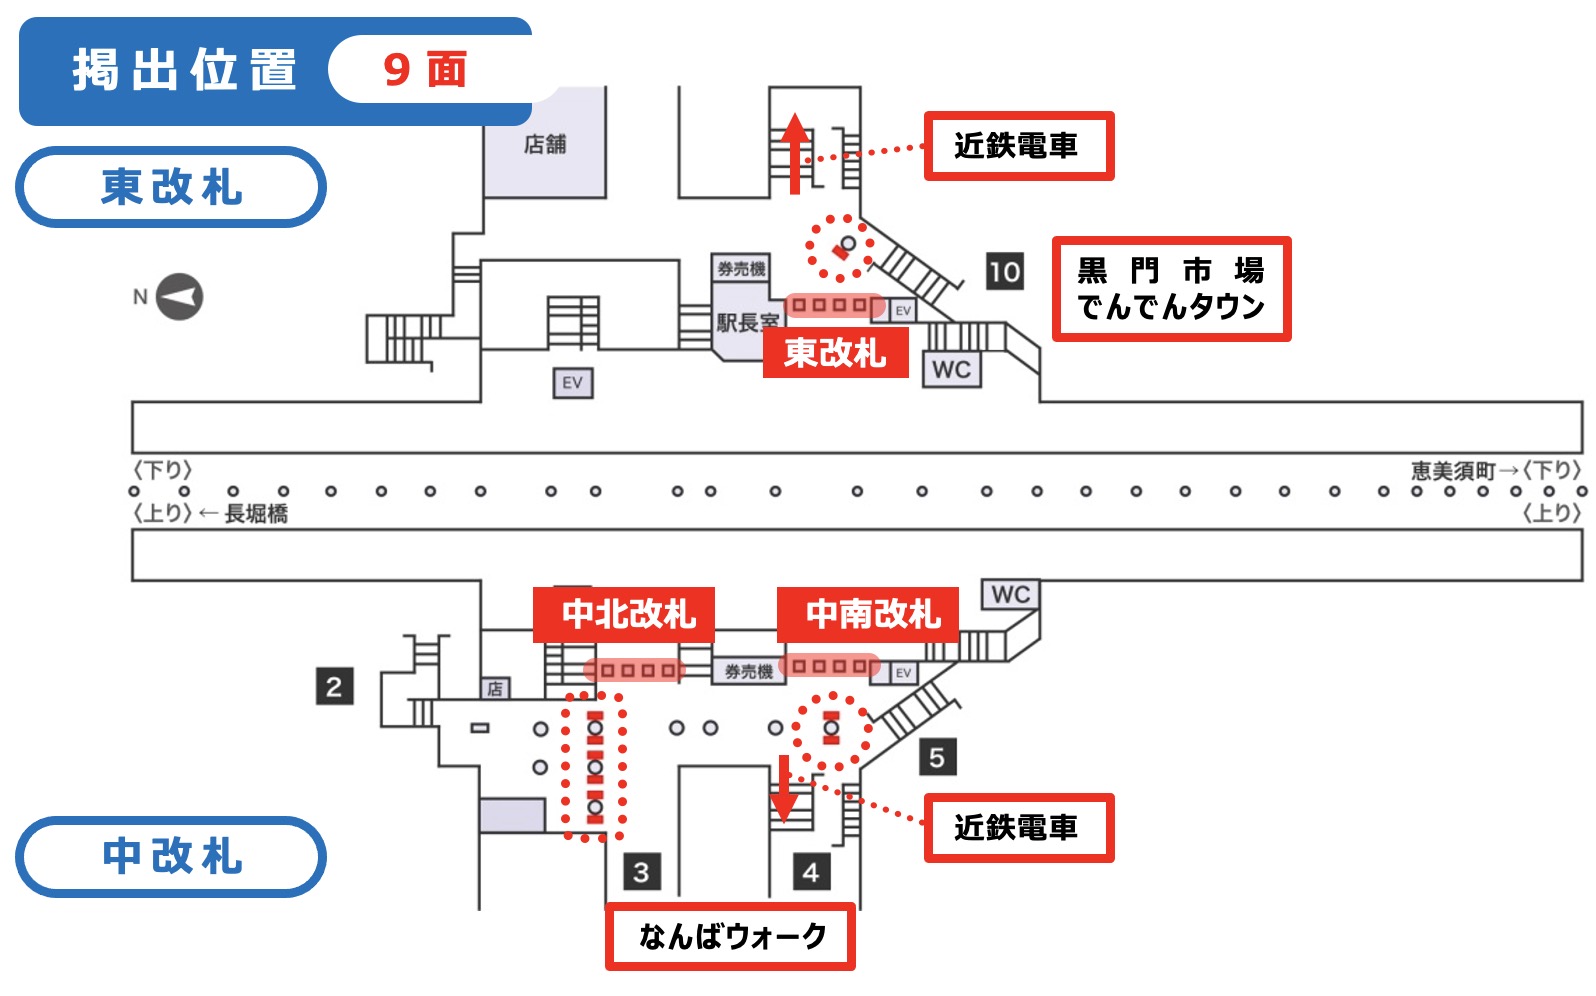 ネットワークビジョン 日本橋駅配置図